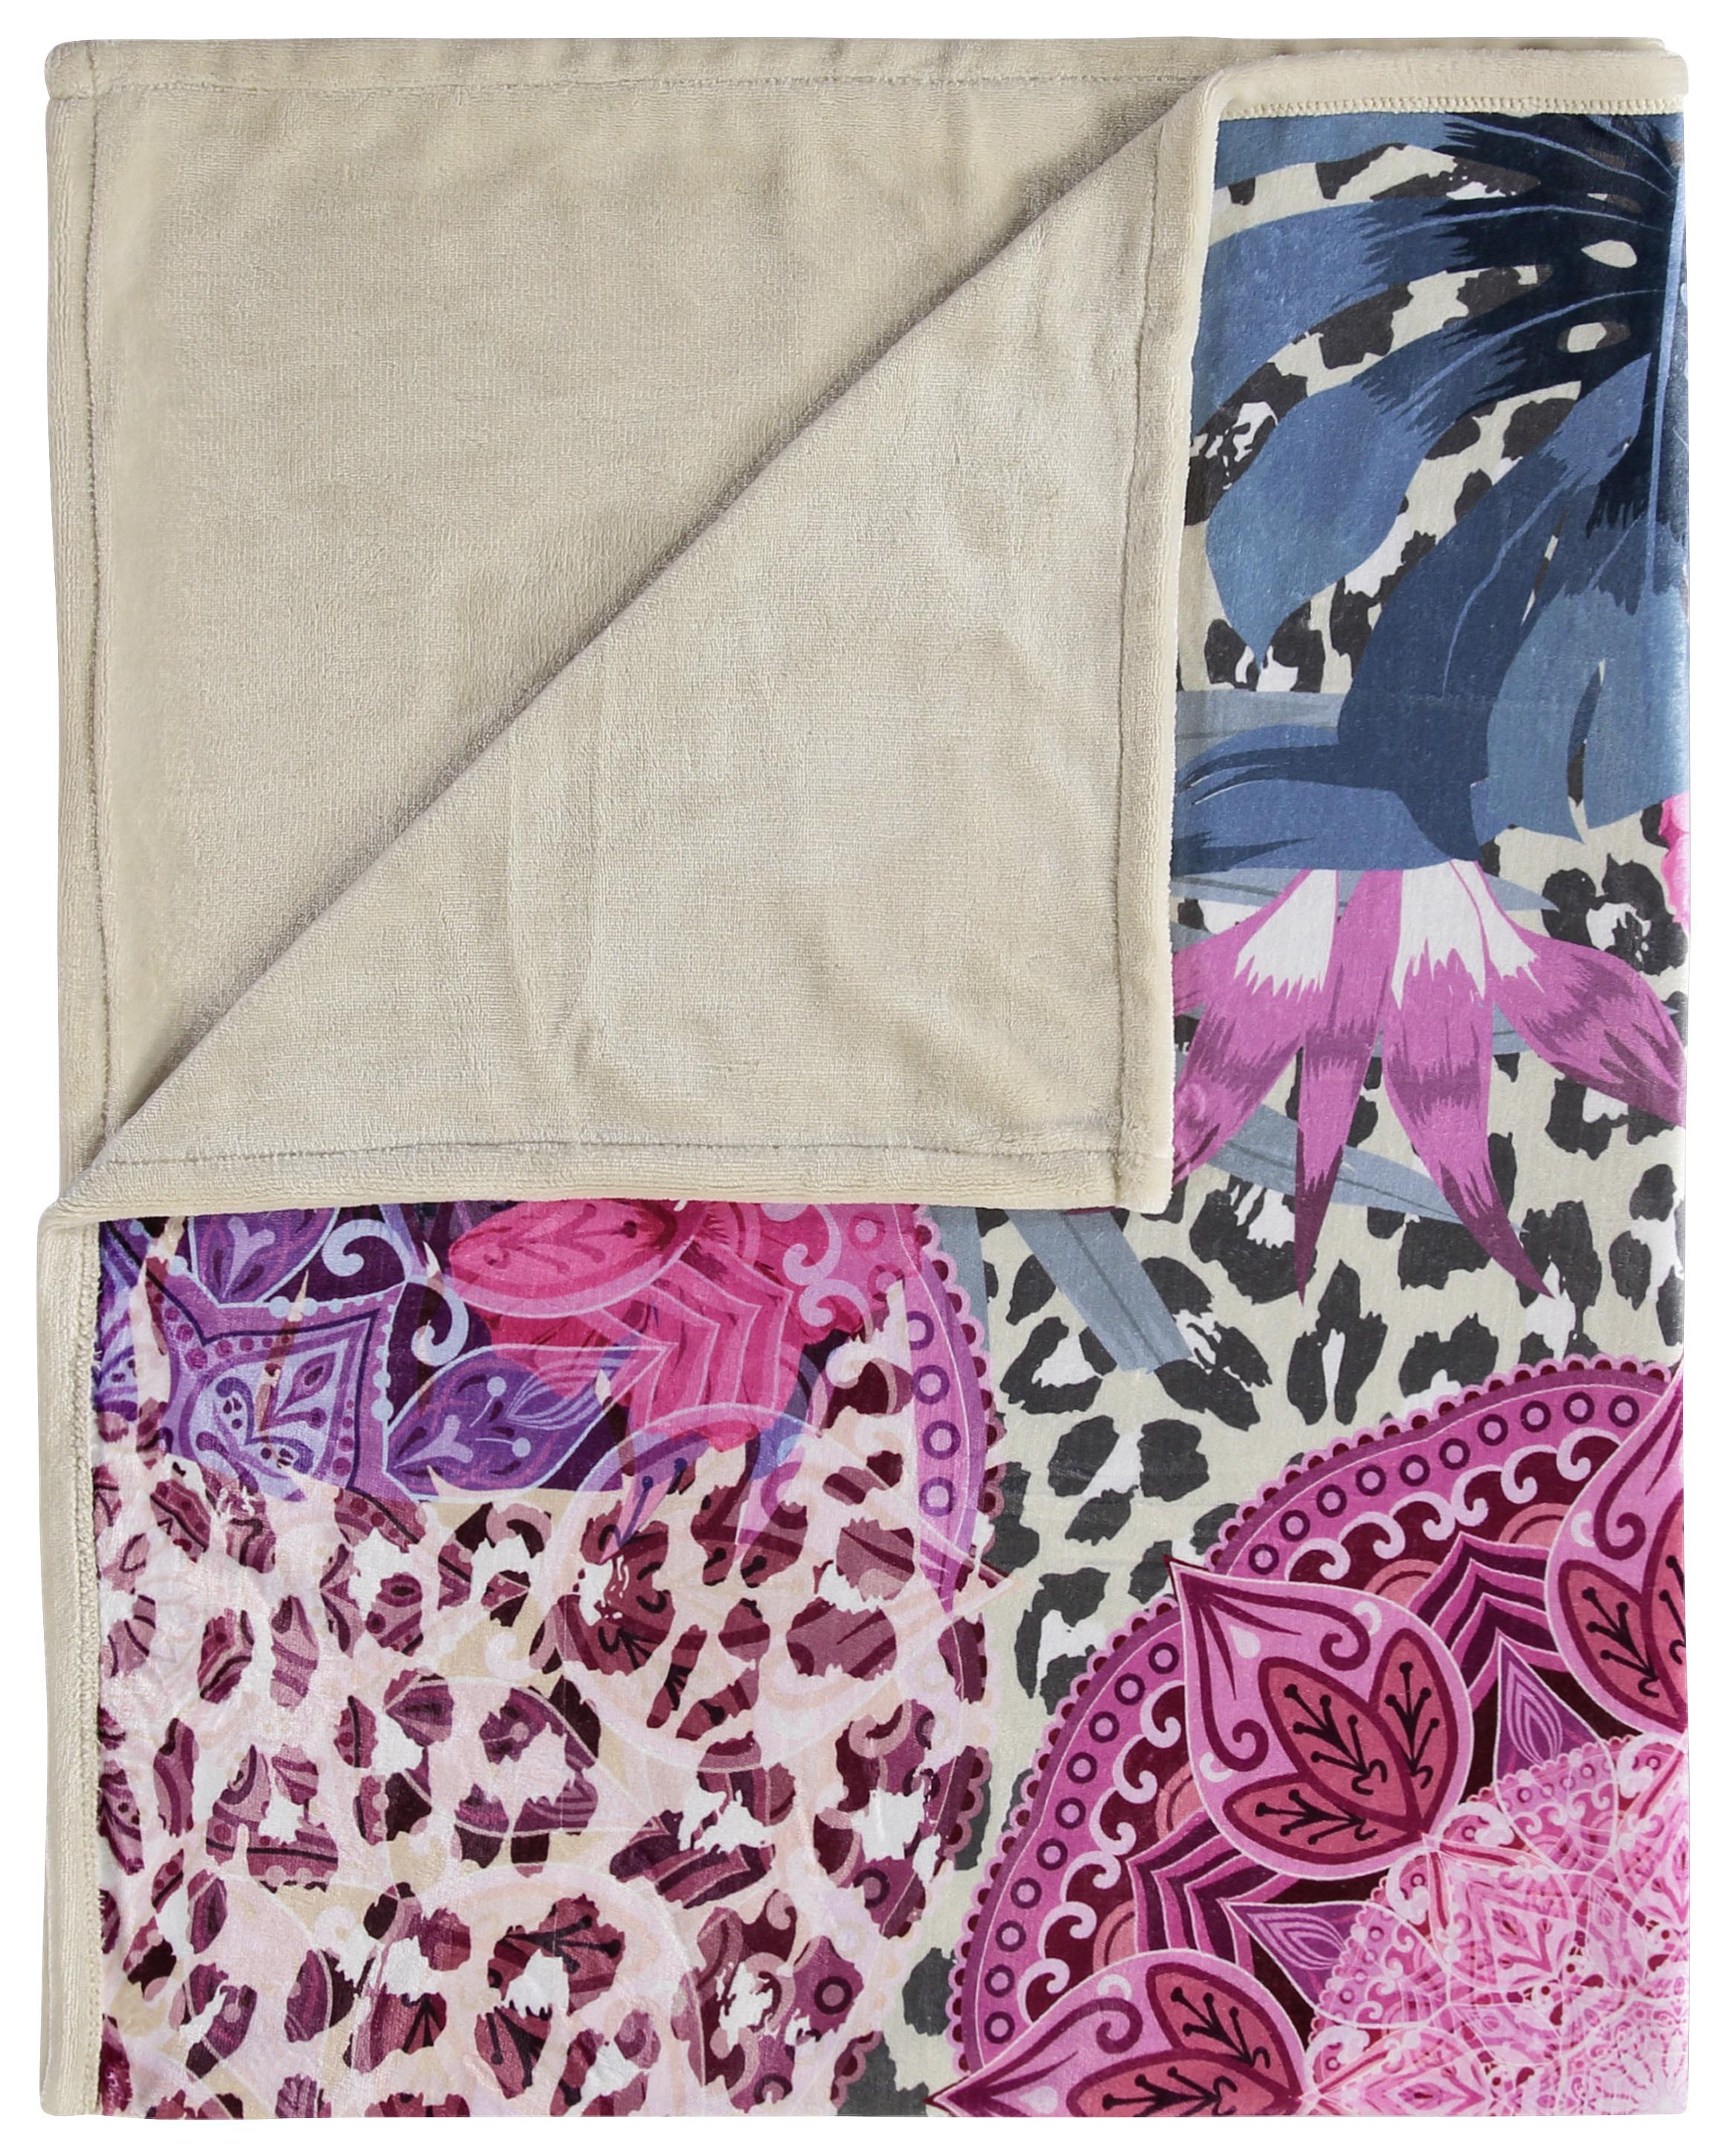 Kuscheldecke Allison Multicolour 130x160 cm - Sandfarben/Multicolor, Textil (130/160cm)